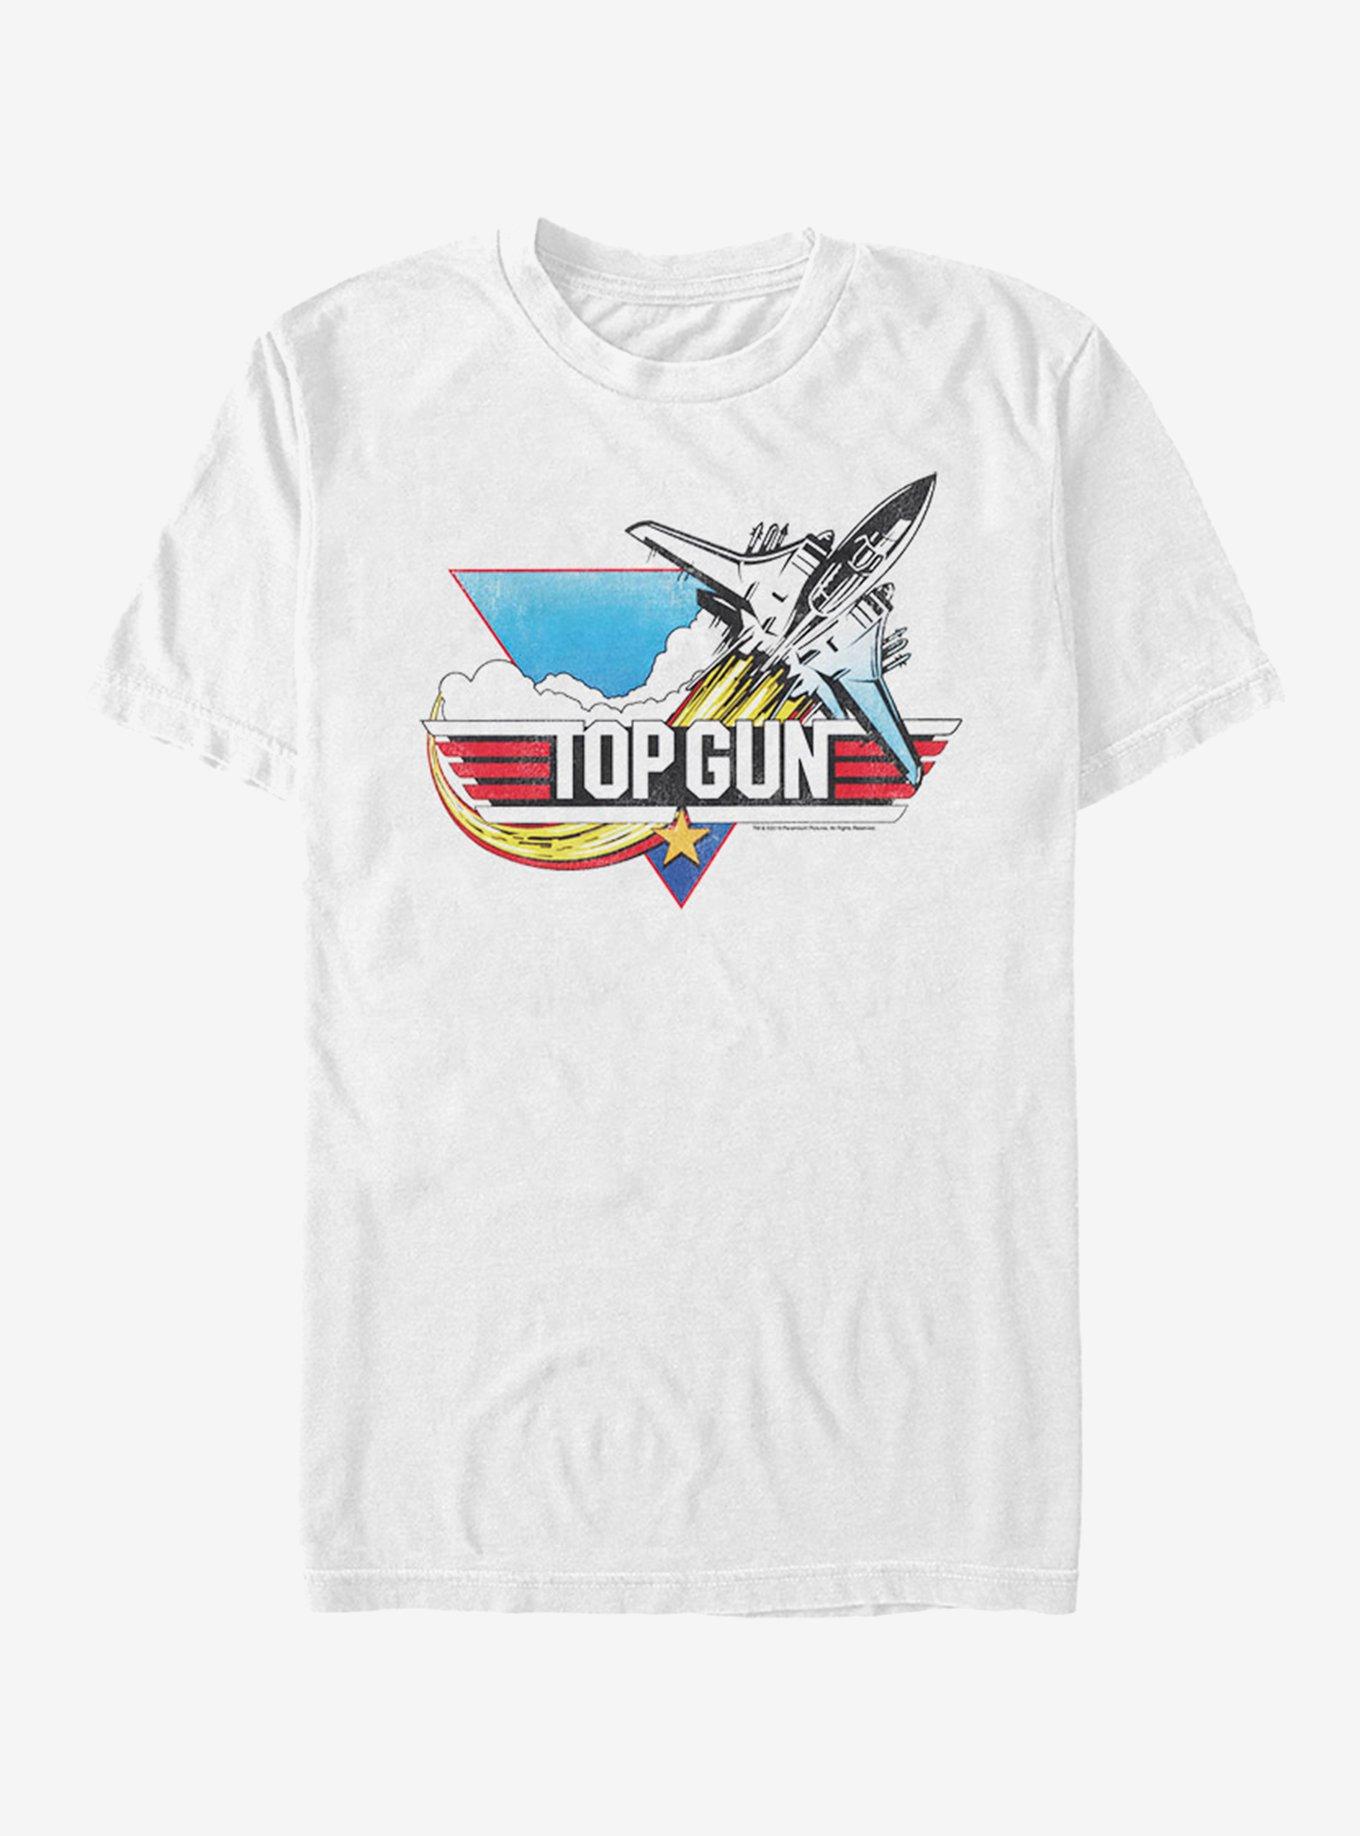 top gun shirts